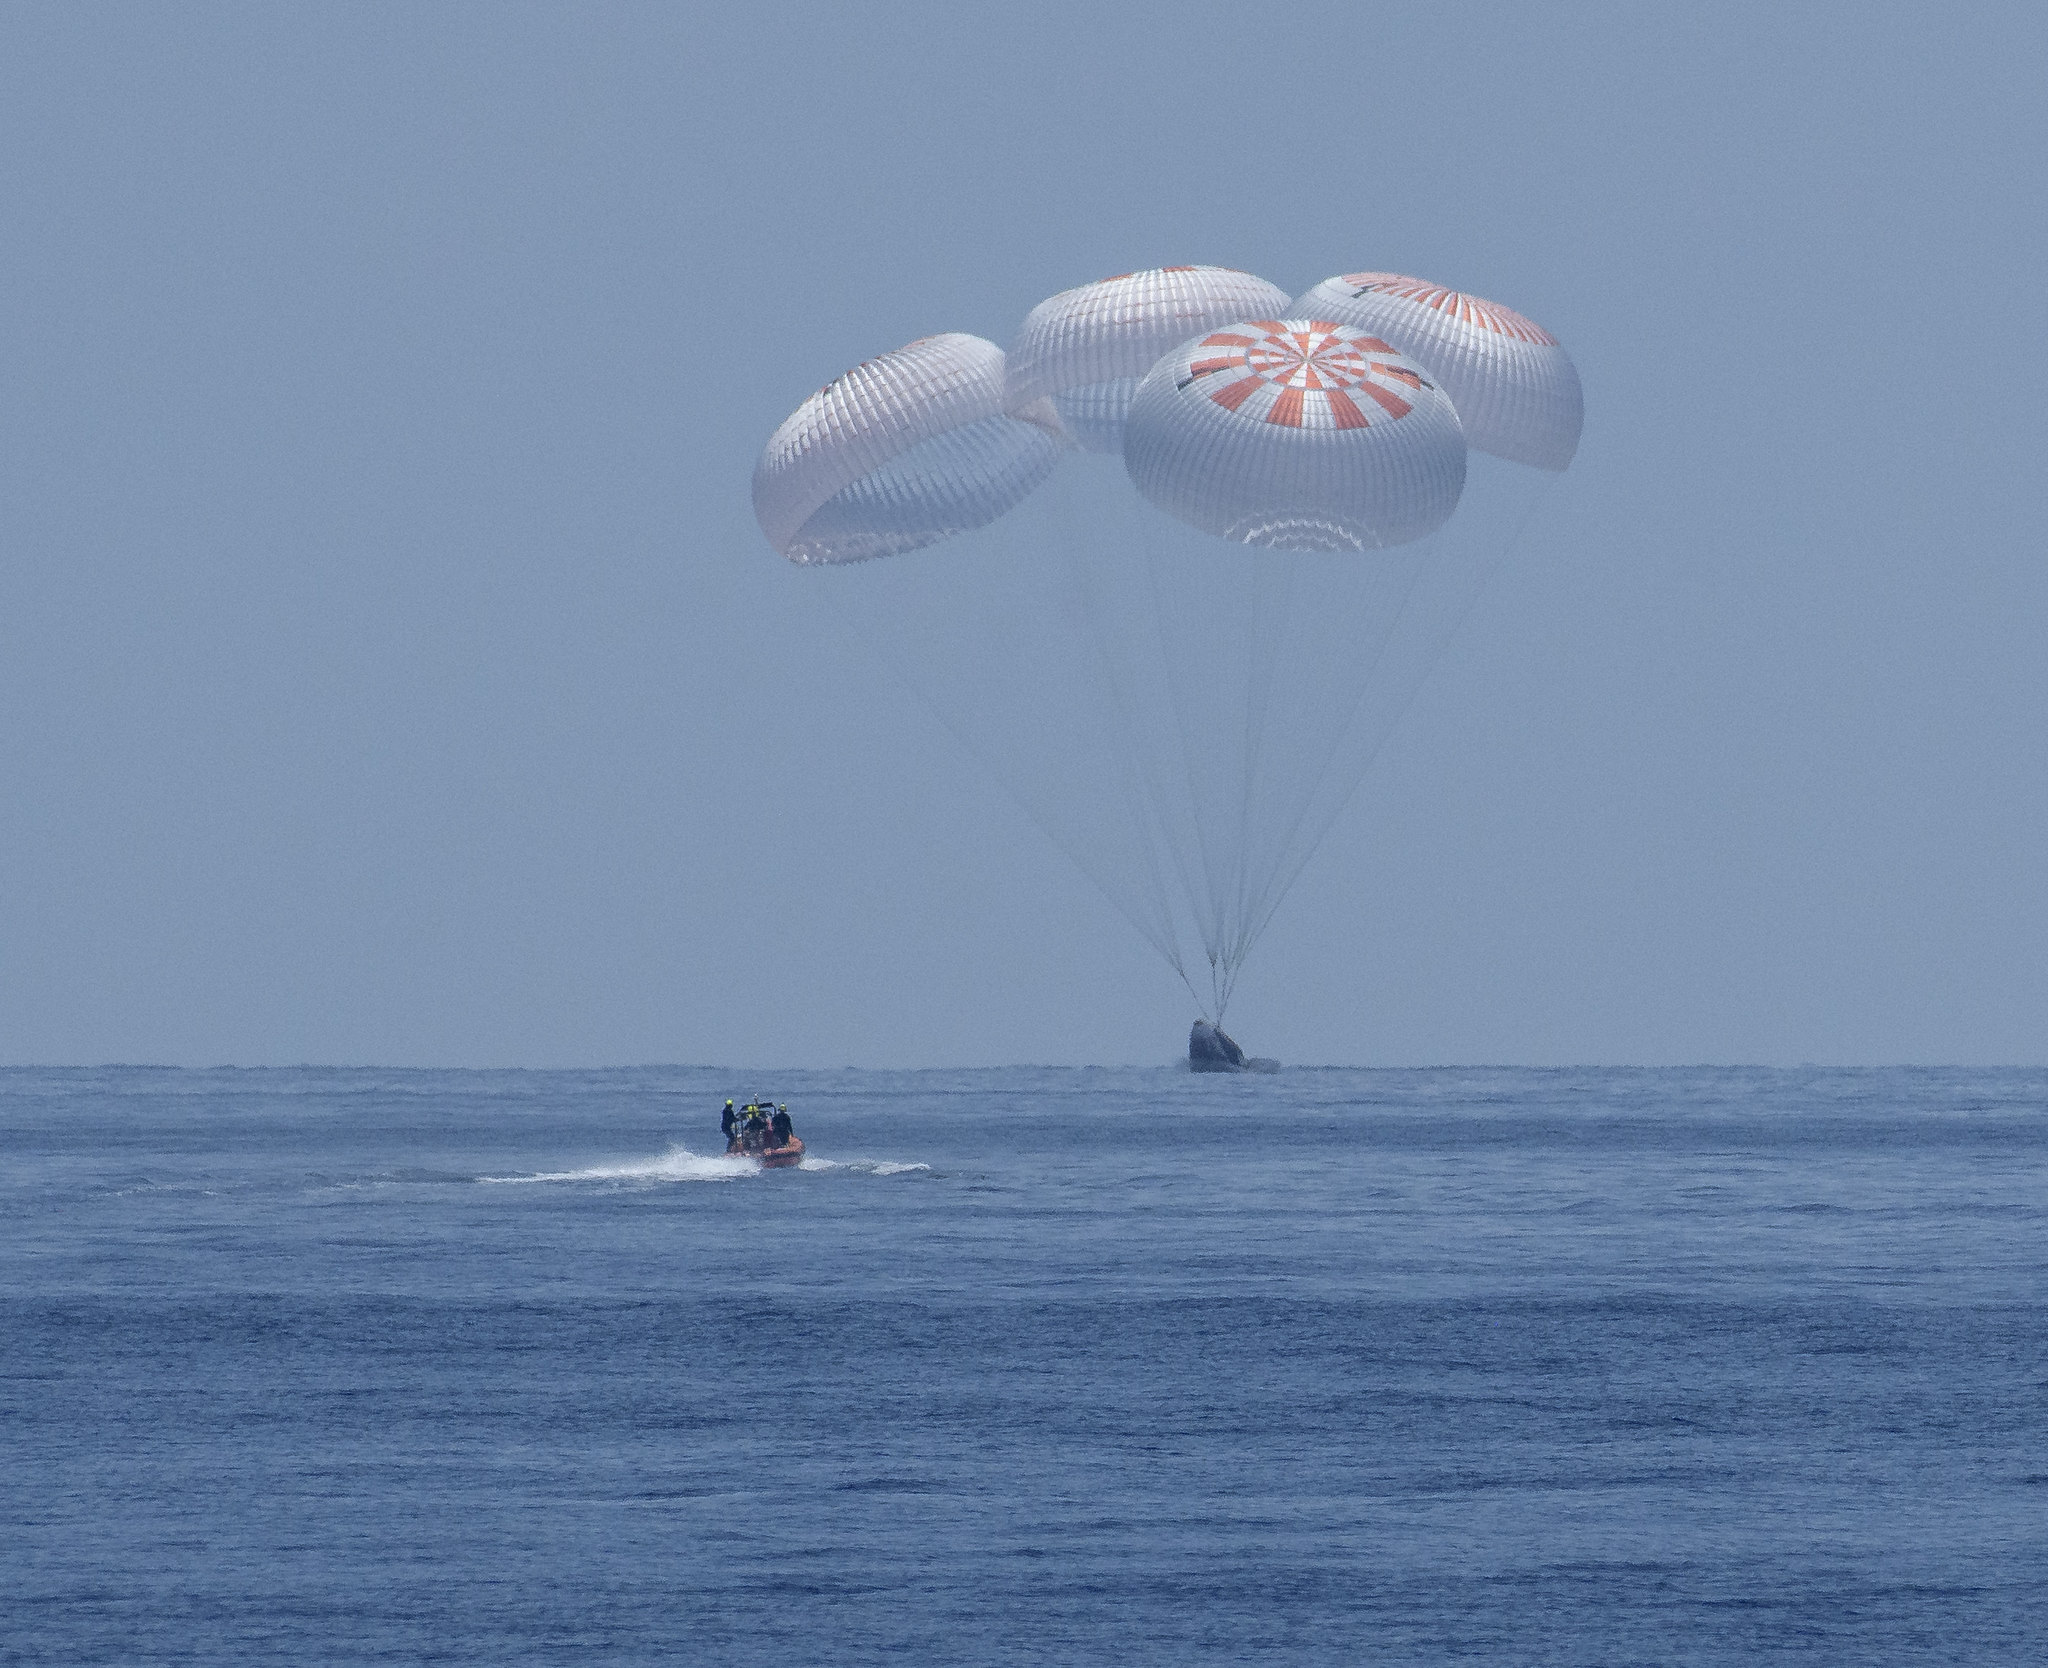 Фото: как происходила посадка модуля Crew Dragon в океане